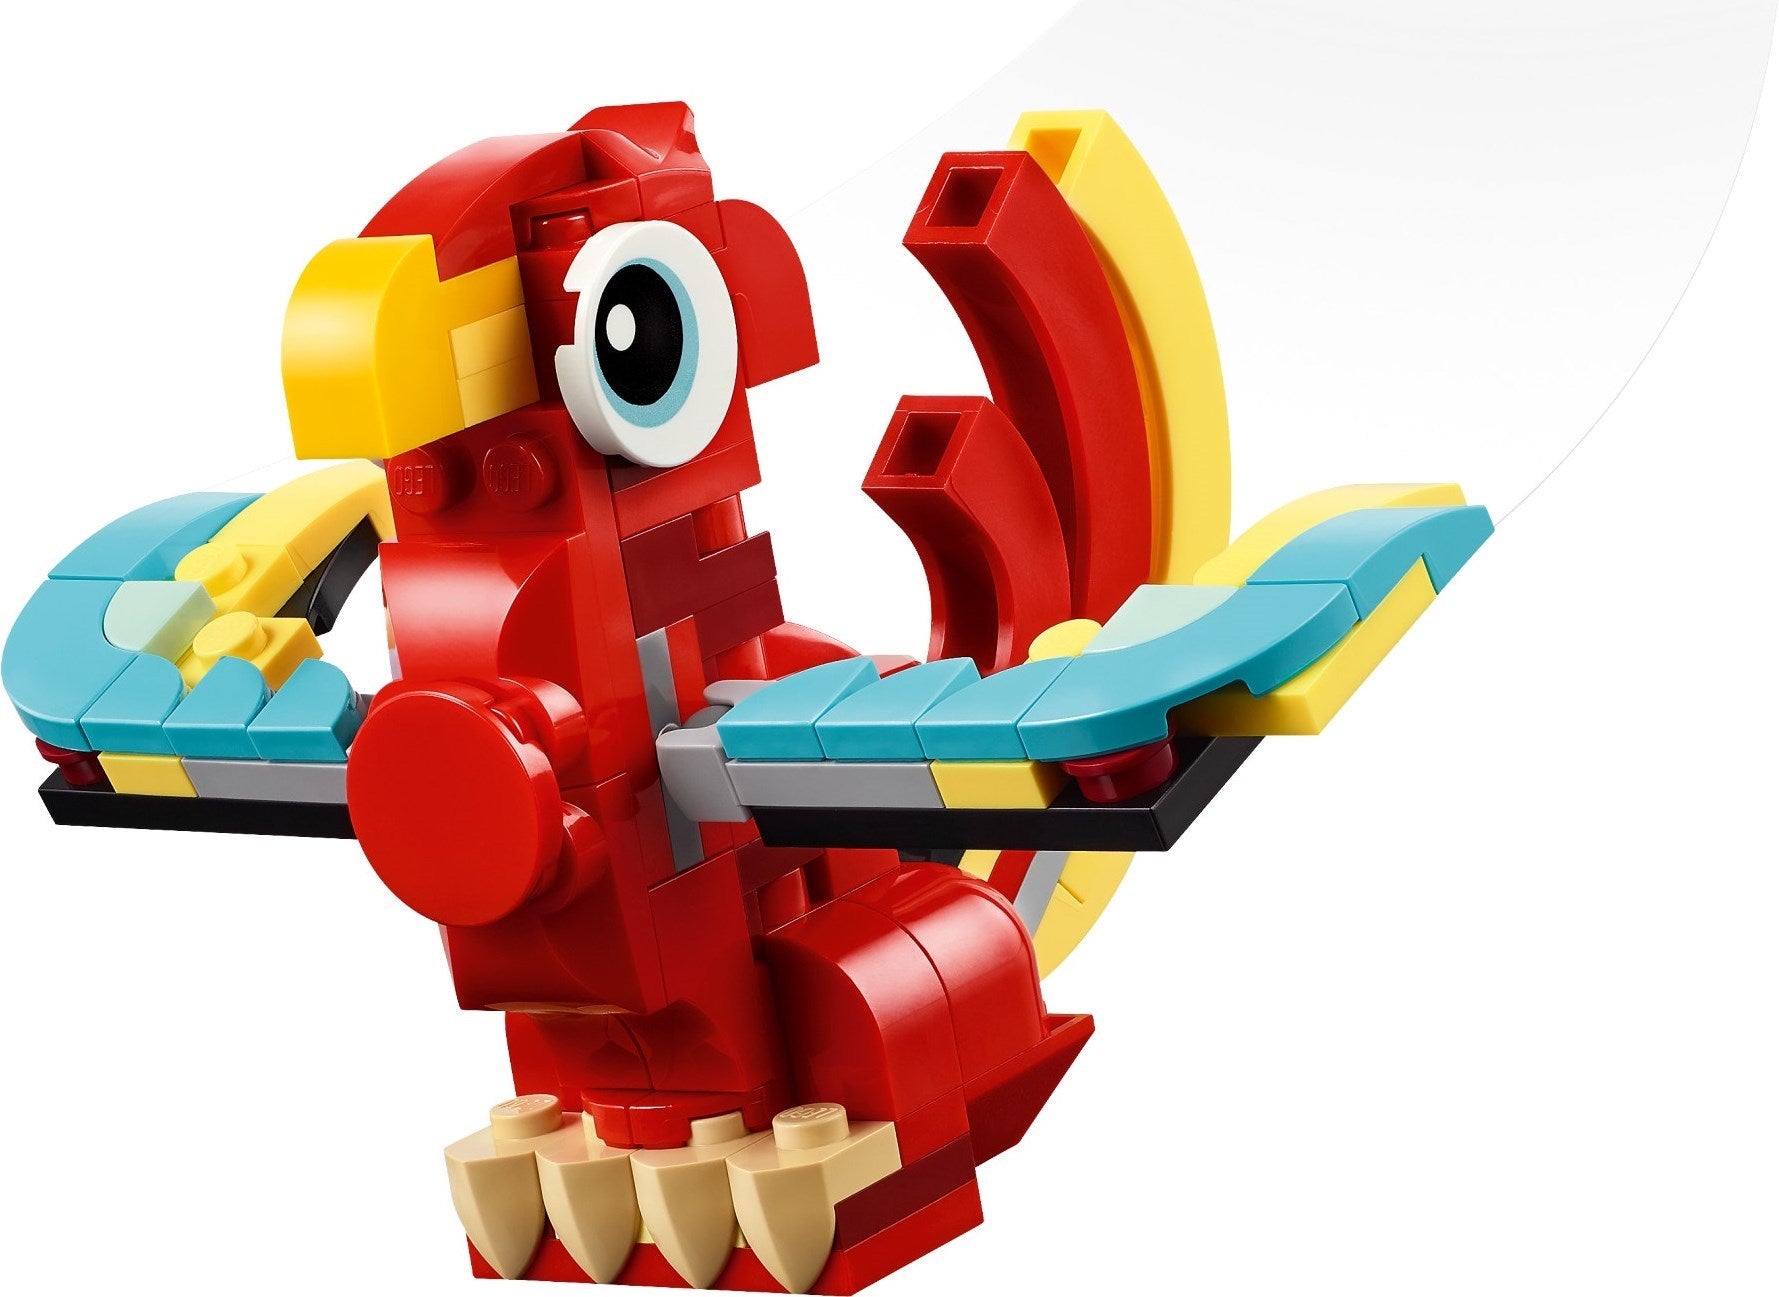 LEGO 31145 Red Dragon